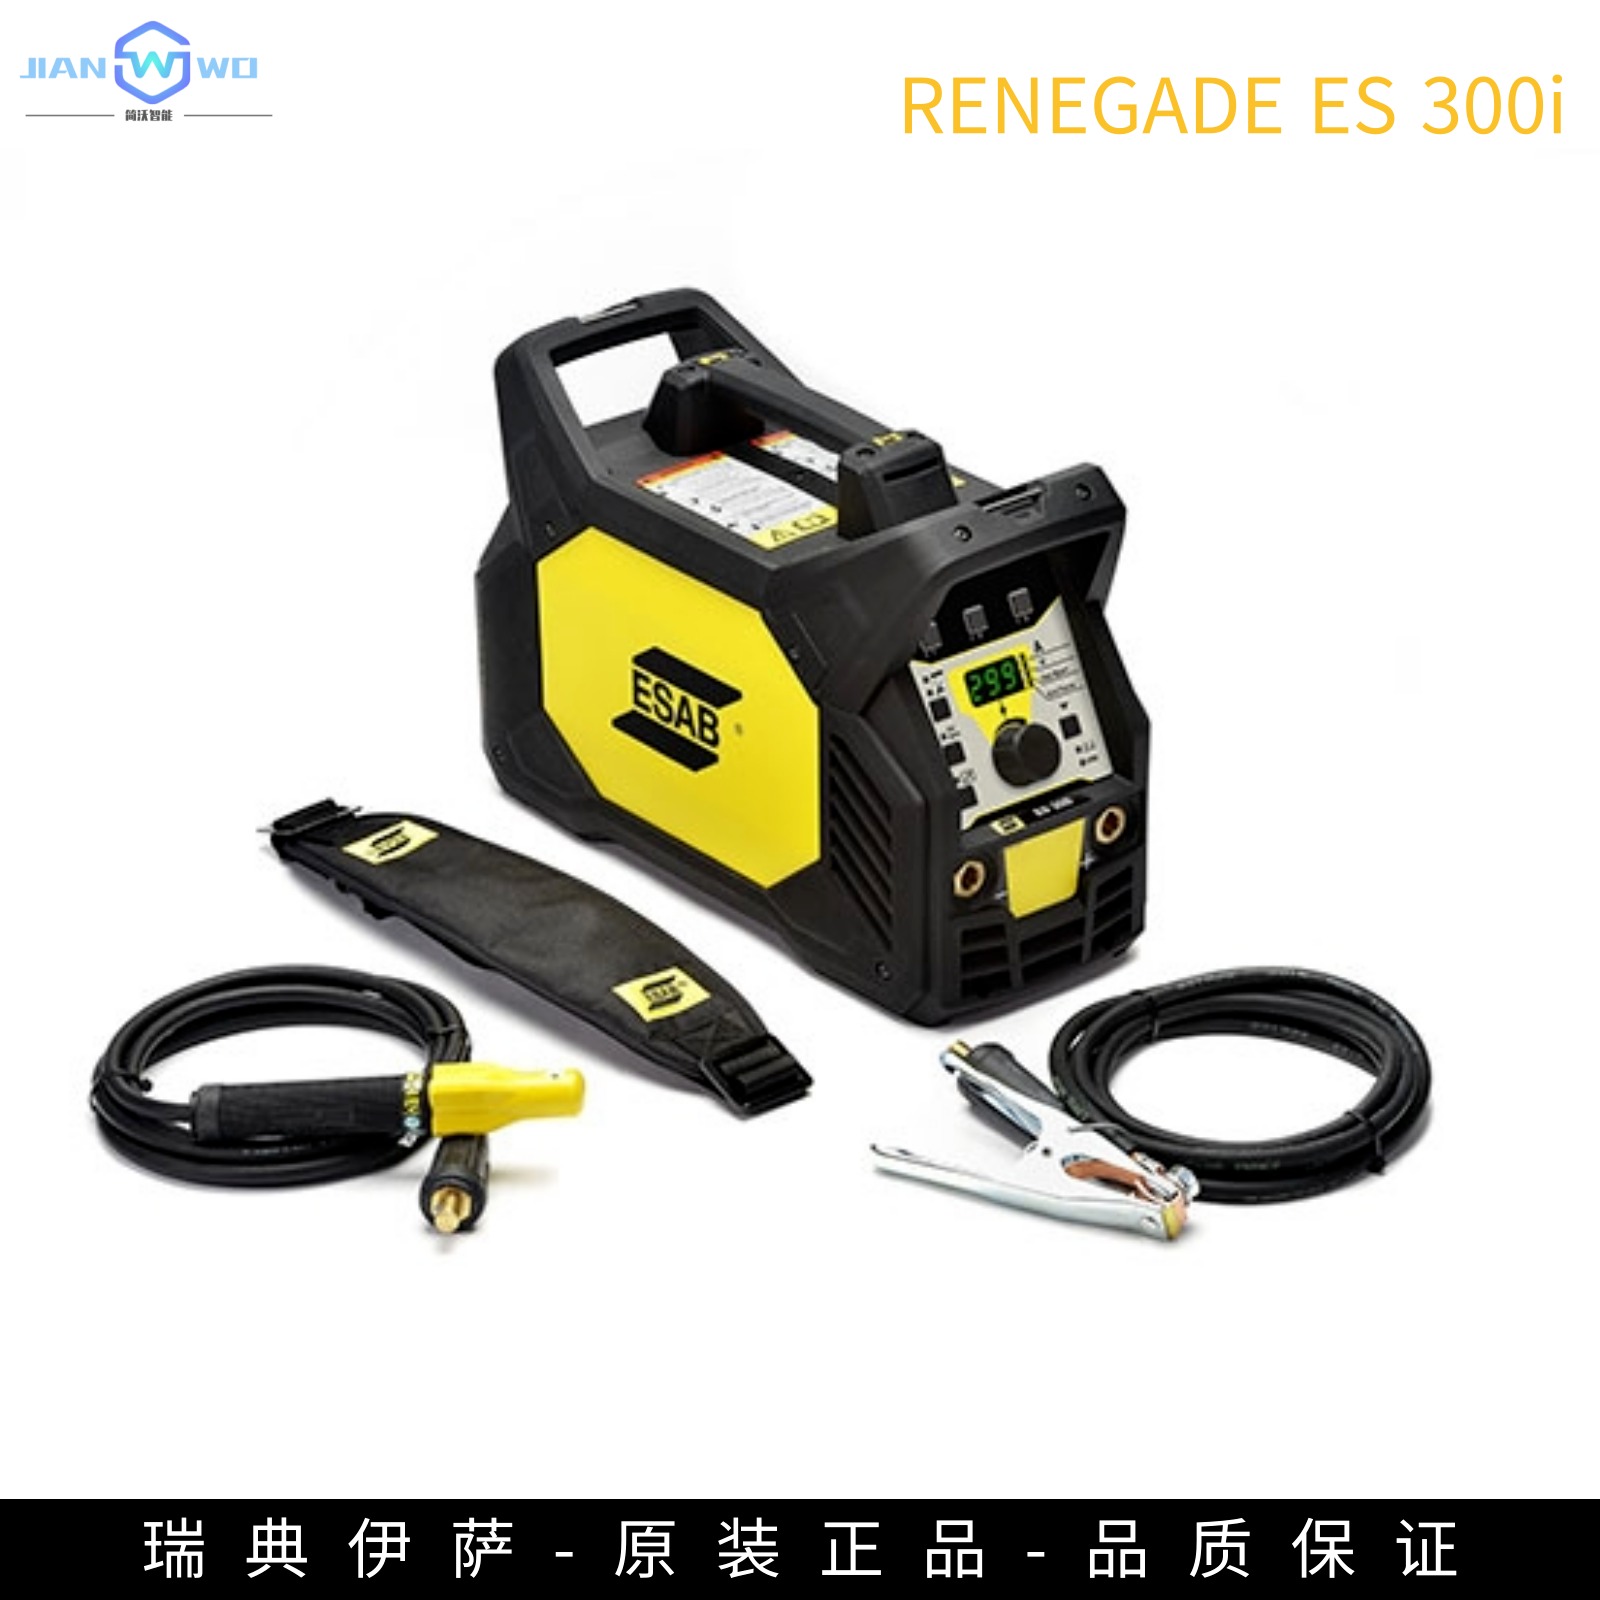 进口伊萨焊机RENEGADE ES 300i 是一款基于手工焊和电焊条焊的逆变焊机